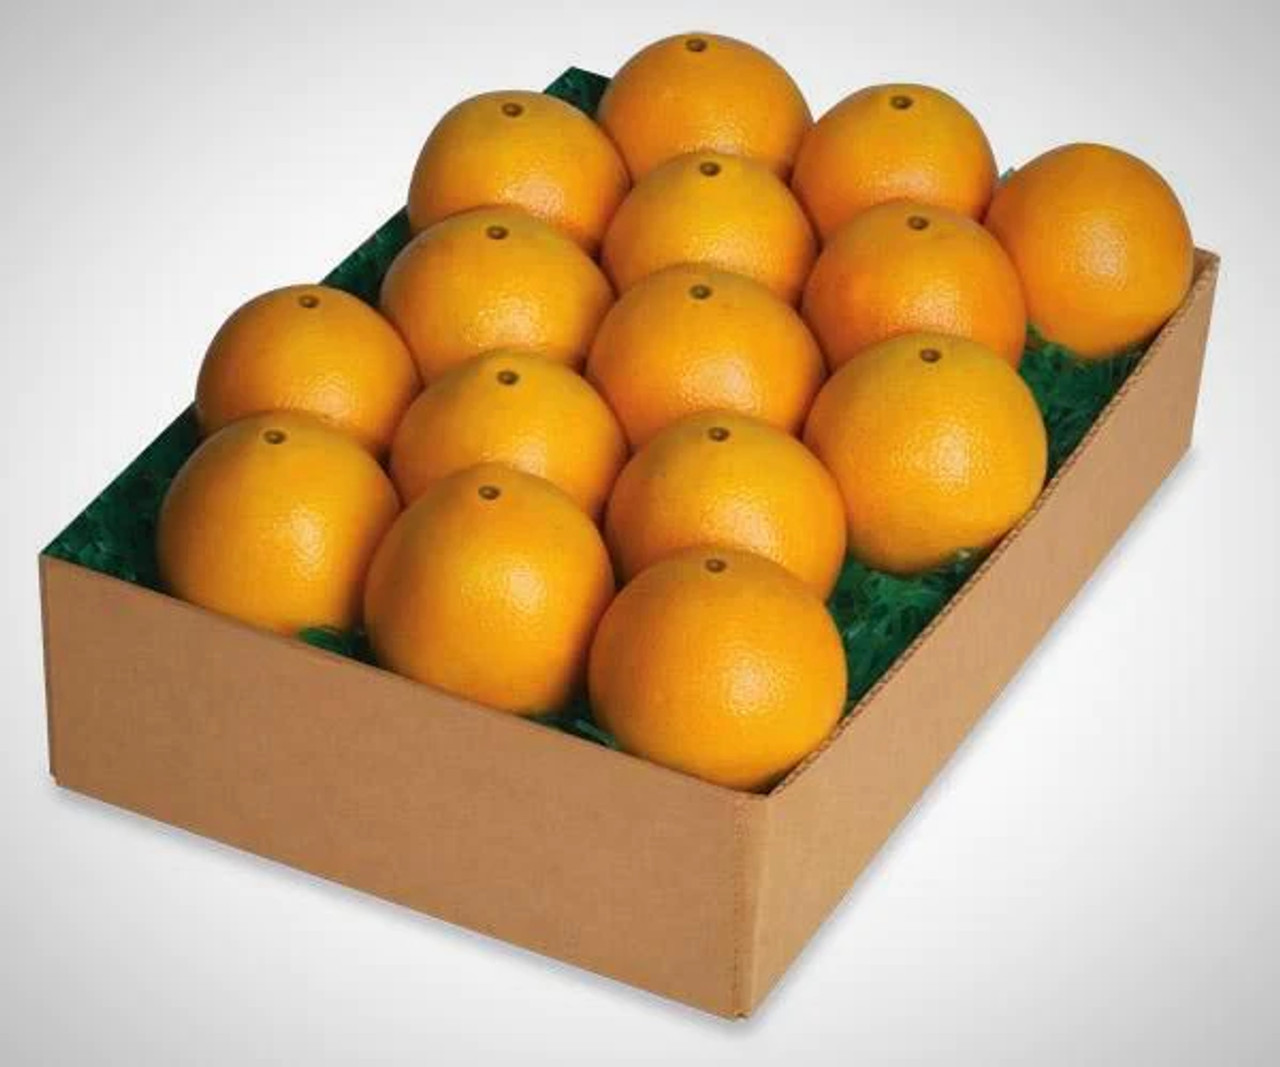 Navel Oranges - Full Box